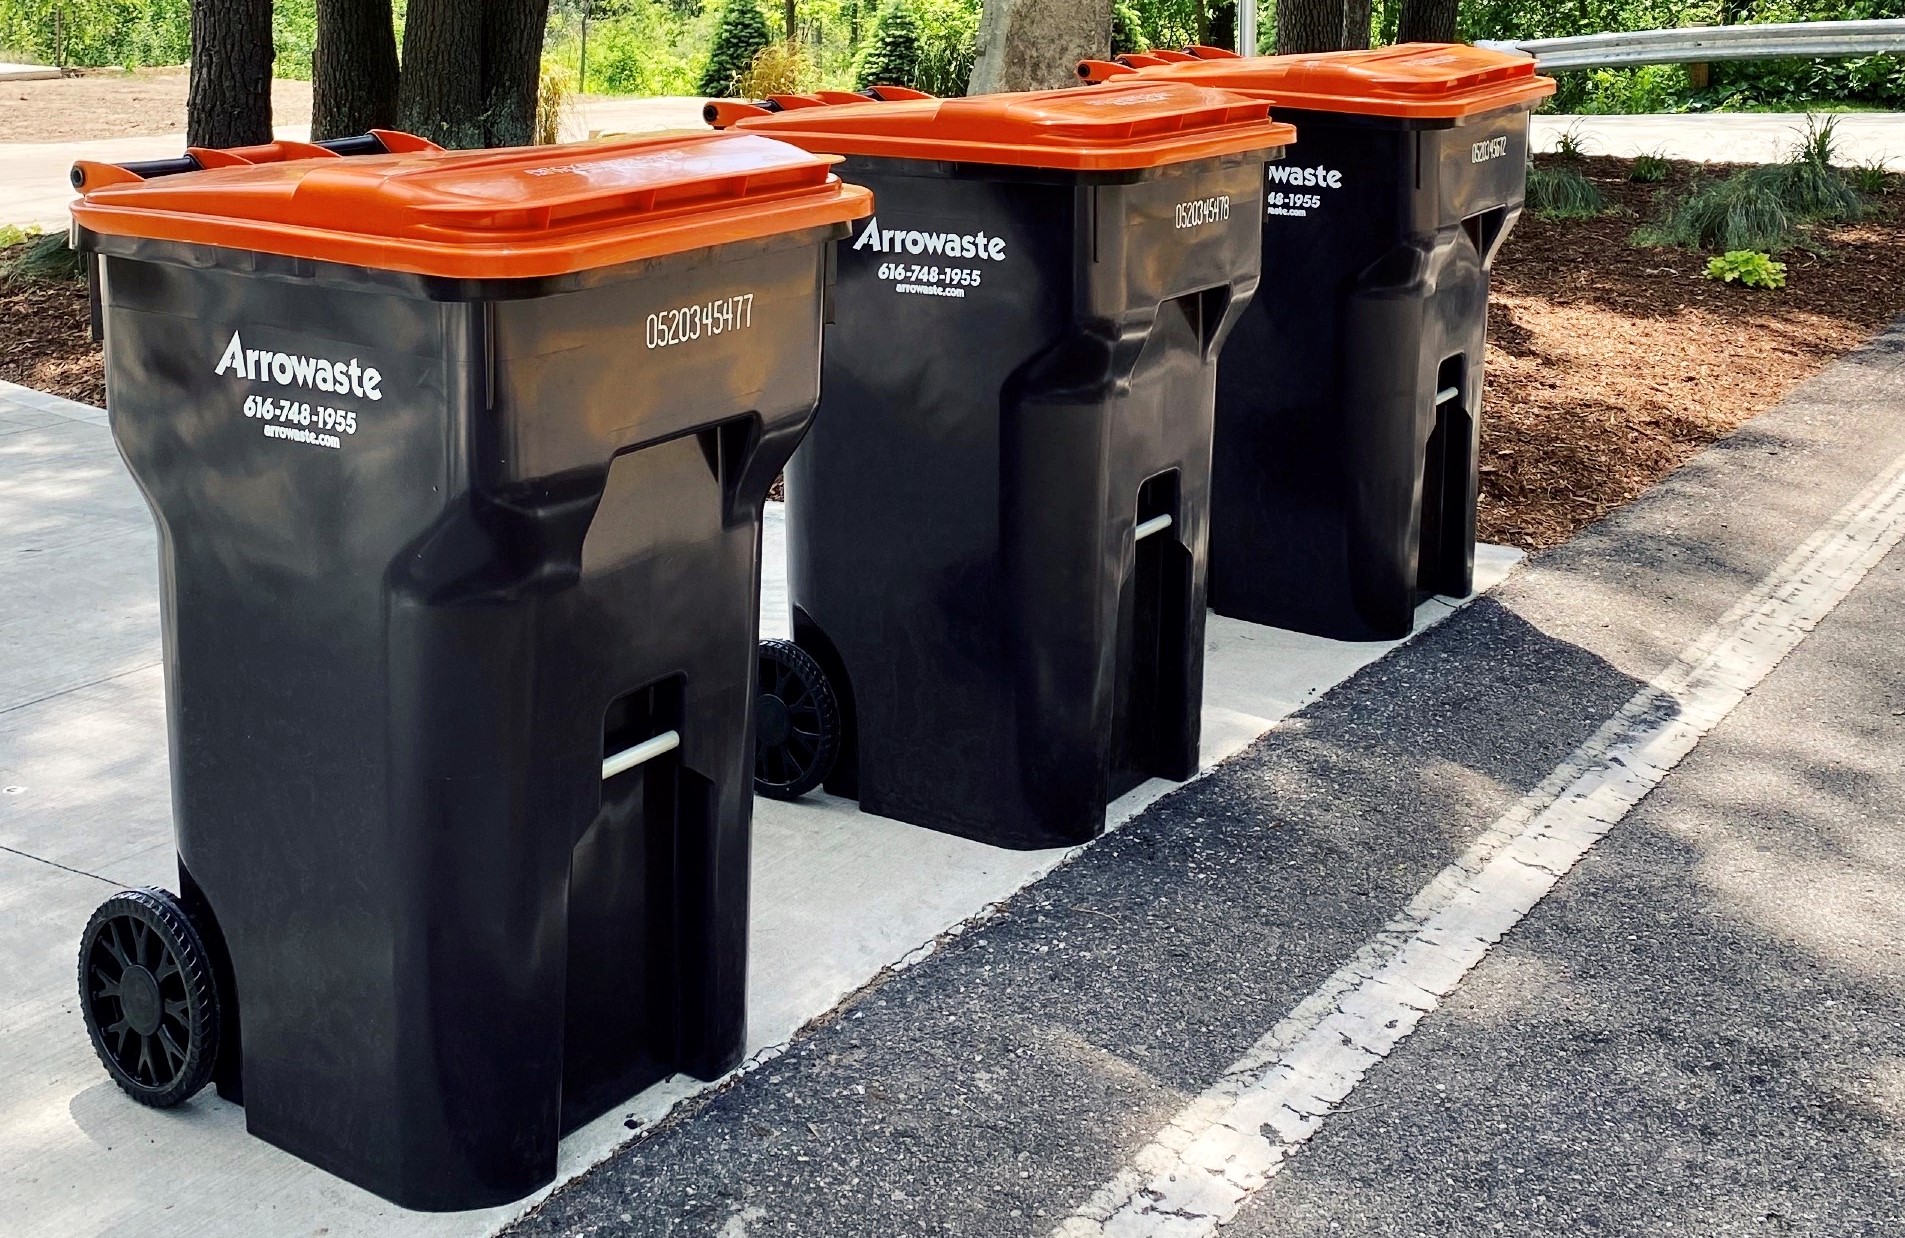 3 Reasons Why Should Avoid Having Overflowing Garbage Bins - Arrowaste